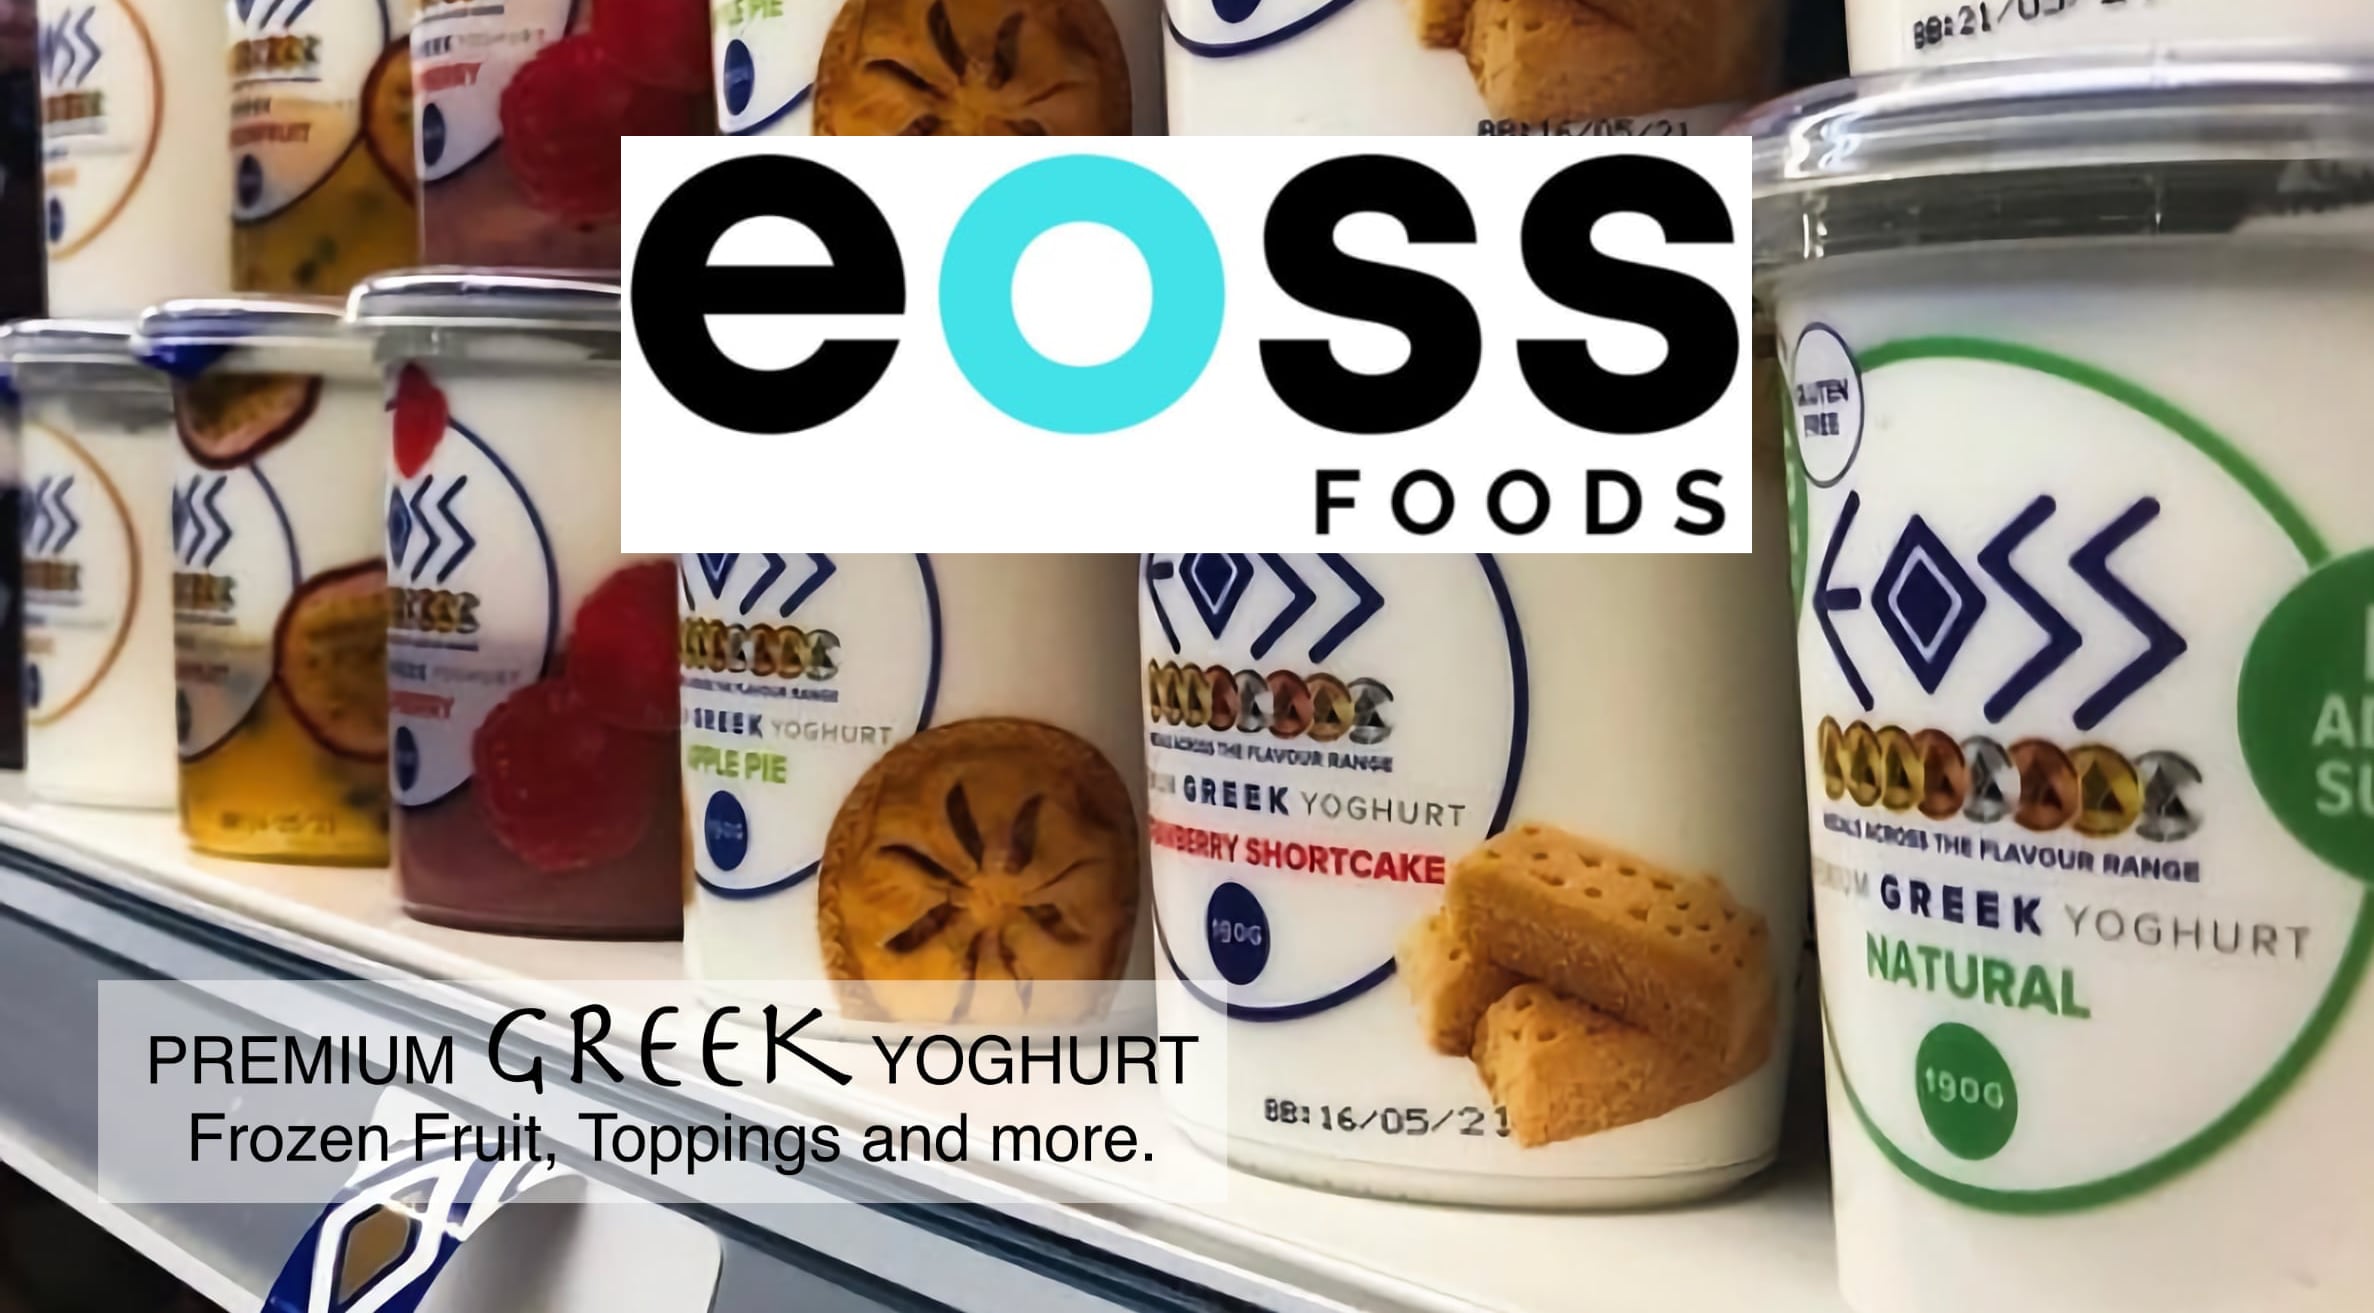 Eoss Yoghurt